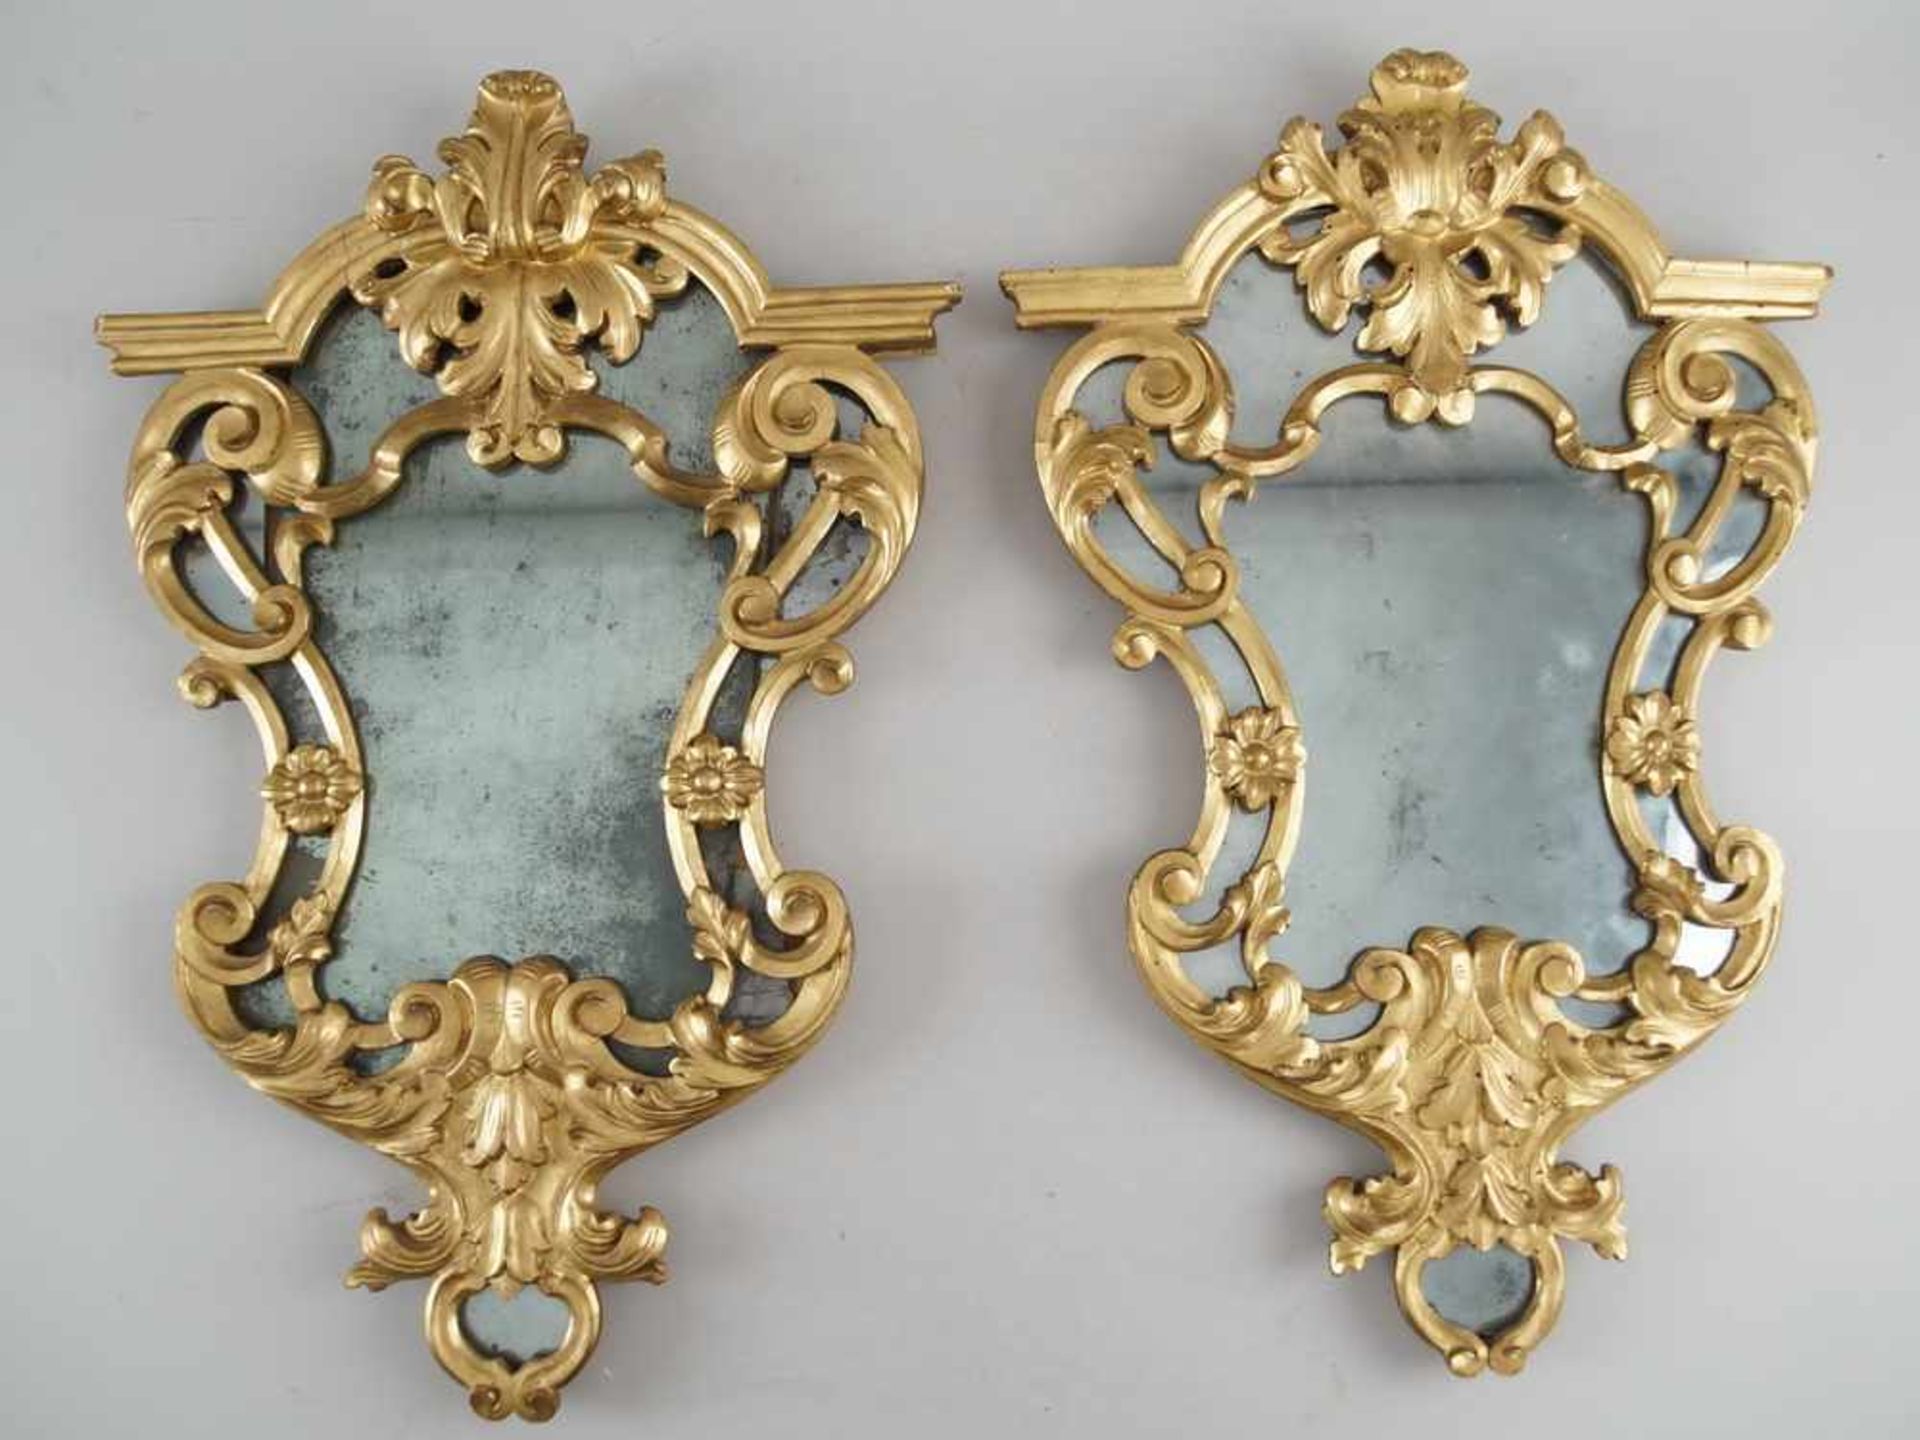 Paar herrschaftliche Barock - Spiegel, Holz geschnitzt, vergoldet, altes Spiegelglas,Altersspuren, - Bild 3 aus 9